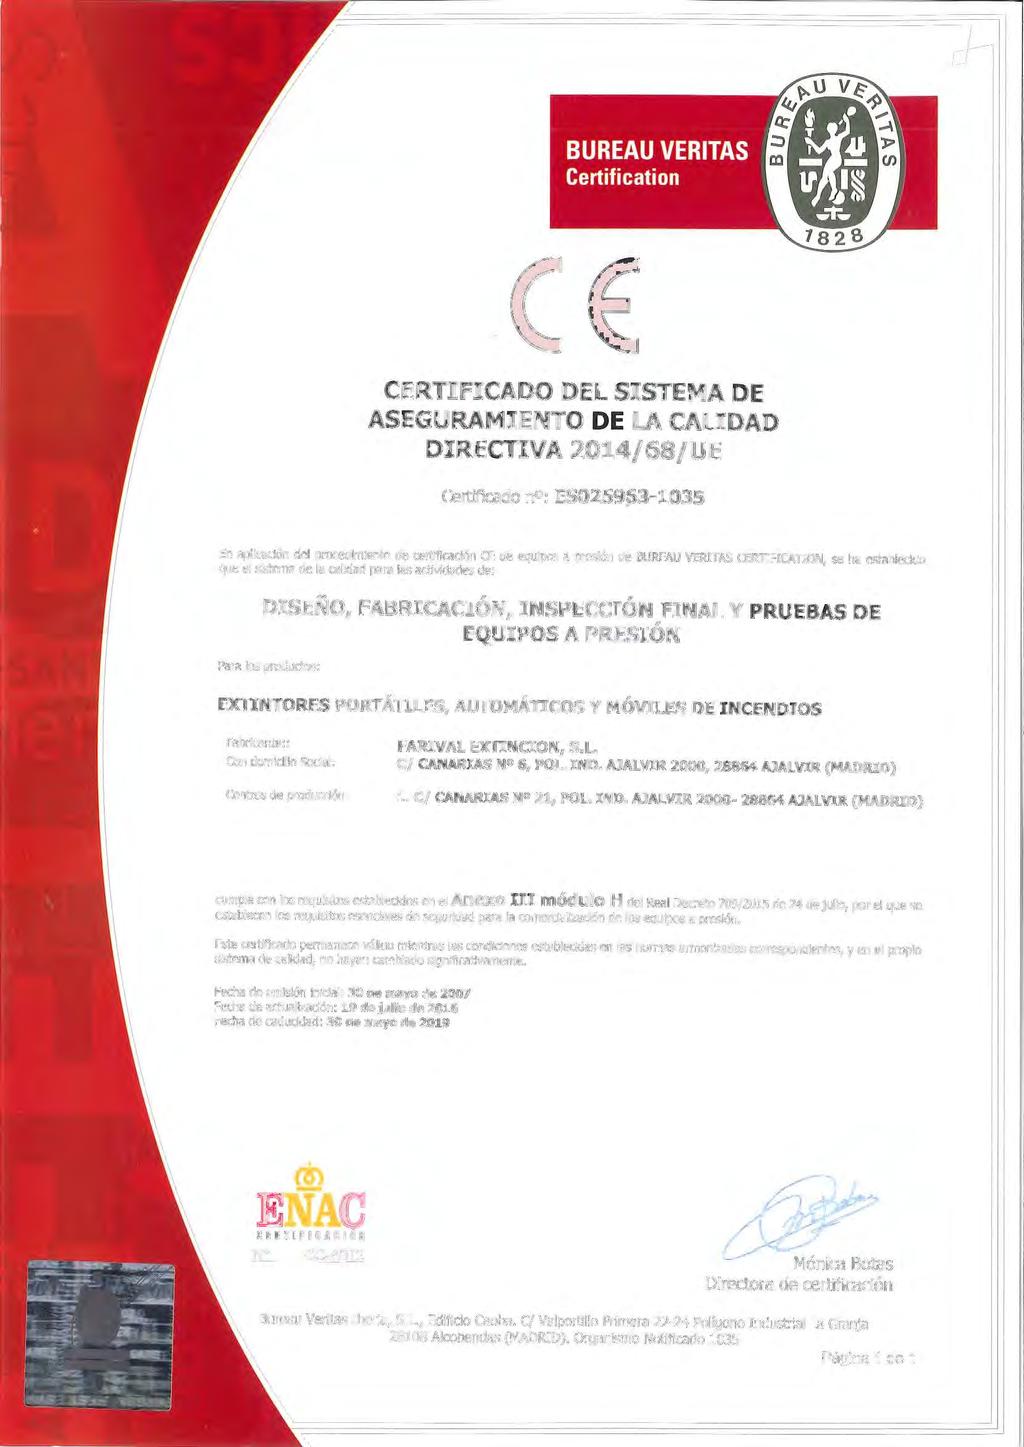 CE CERTIFICADO DEL SISTEMA DE ASEGURAMIENTO DE LA CALIDAD DIRECTIVA 2014/68/UE Certificado n : ES025963-1035 ' 1 1 En aplicación del procedimiento de certificación CE de equipos a presión de BUREAU